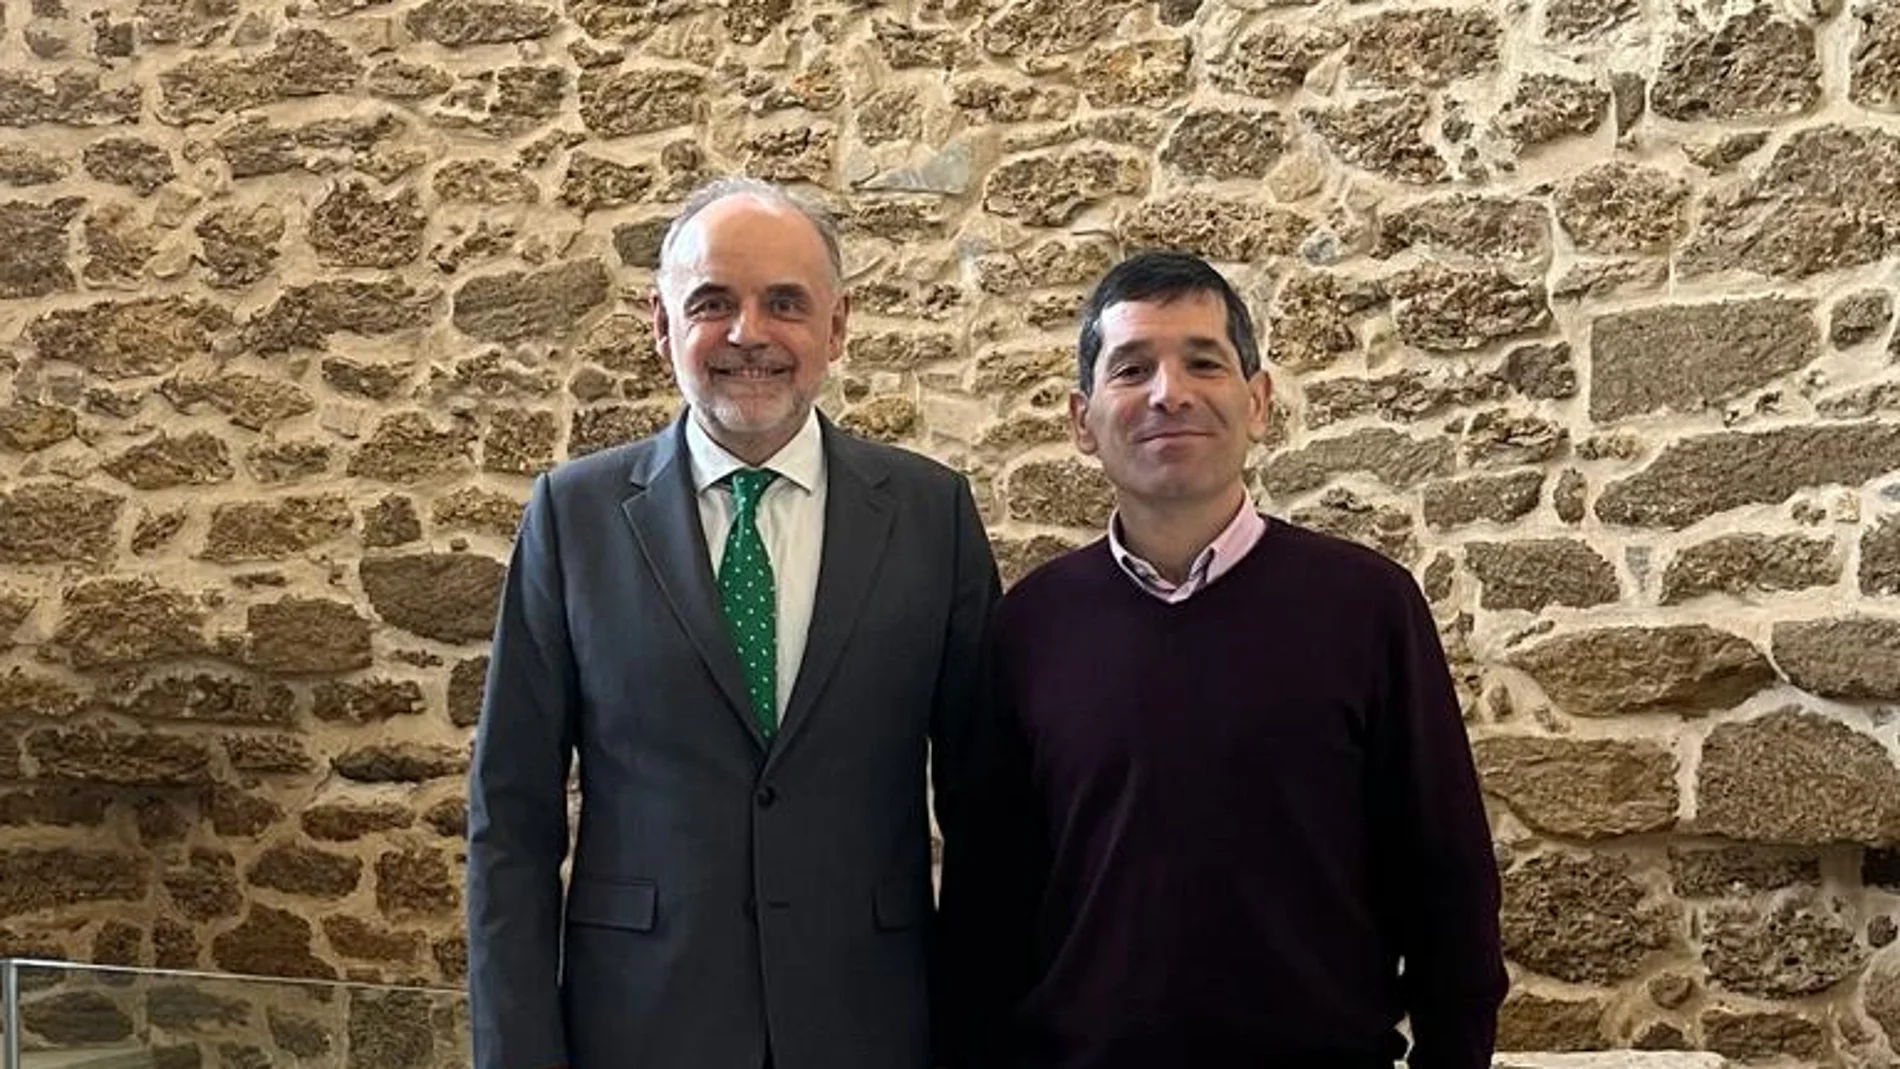 El director corporativo de Galletas Gullón, Francisco Hevia; y el secretario general de la Fundación España Habitar, José Javier Sánchez Oliva, suscriben el acuerdo